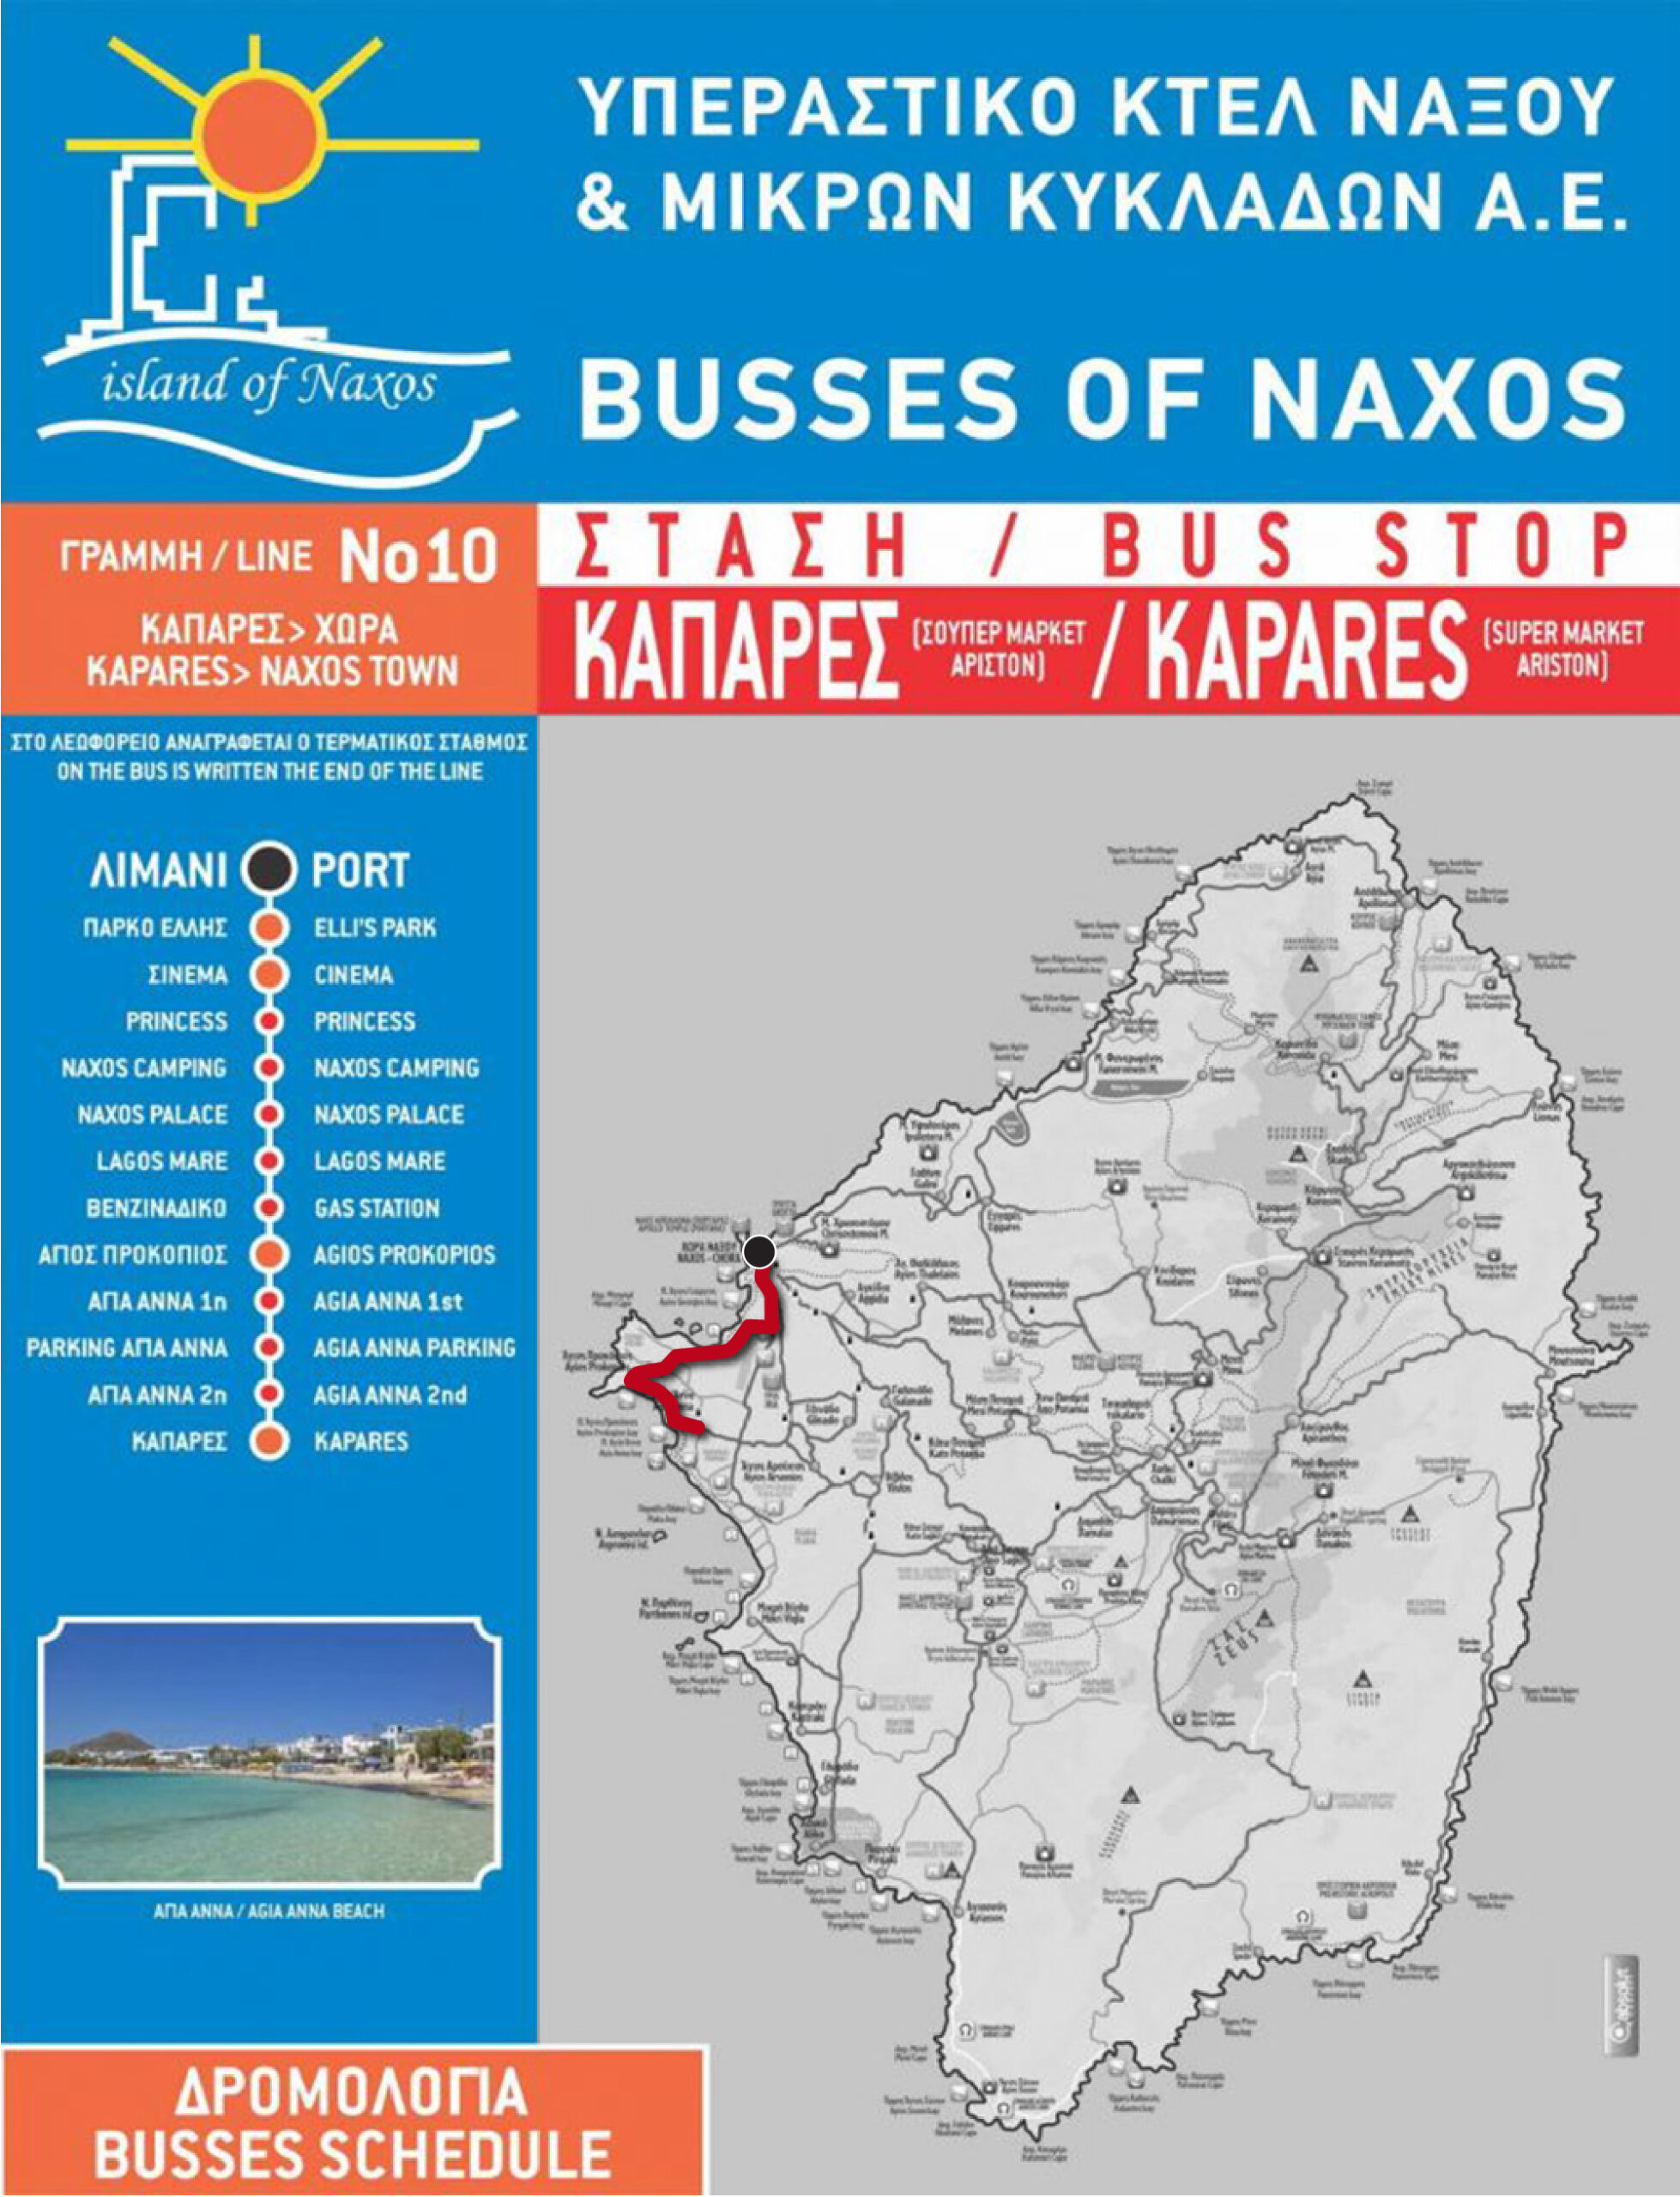 Naxos bus route #10.